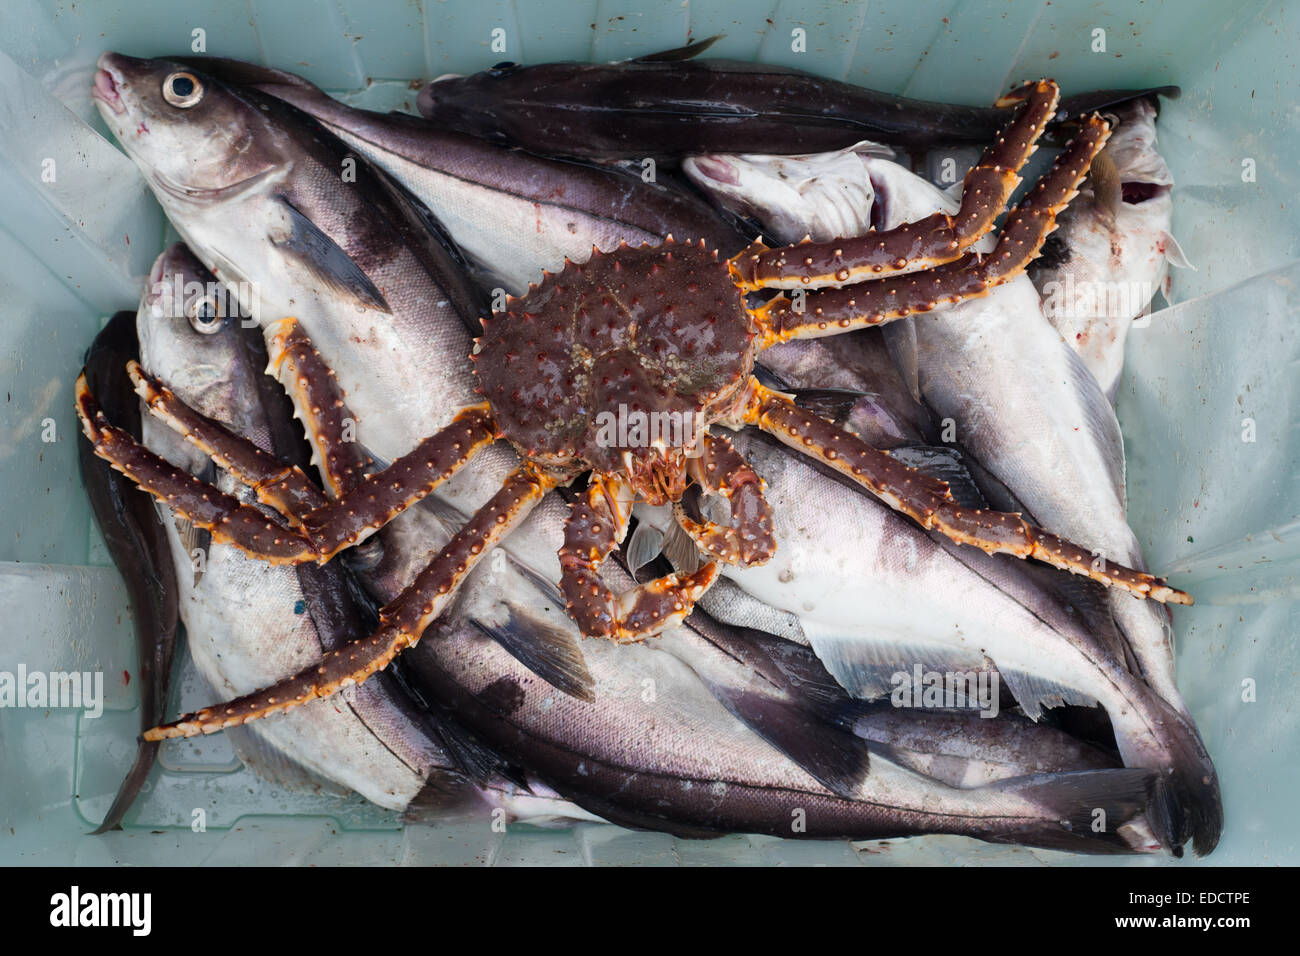 The Haddock and Kamchatka crab Stock Photo